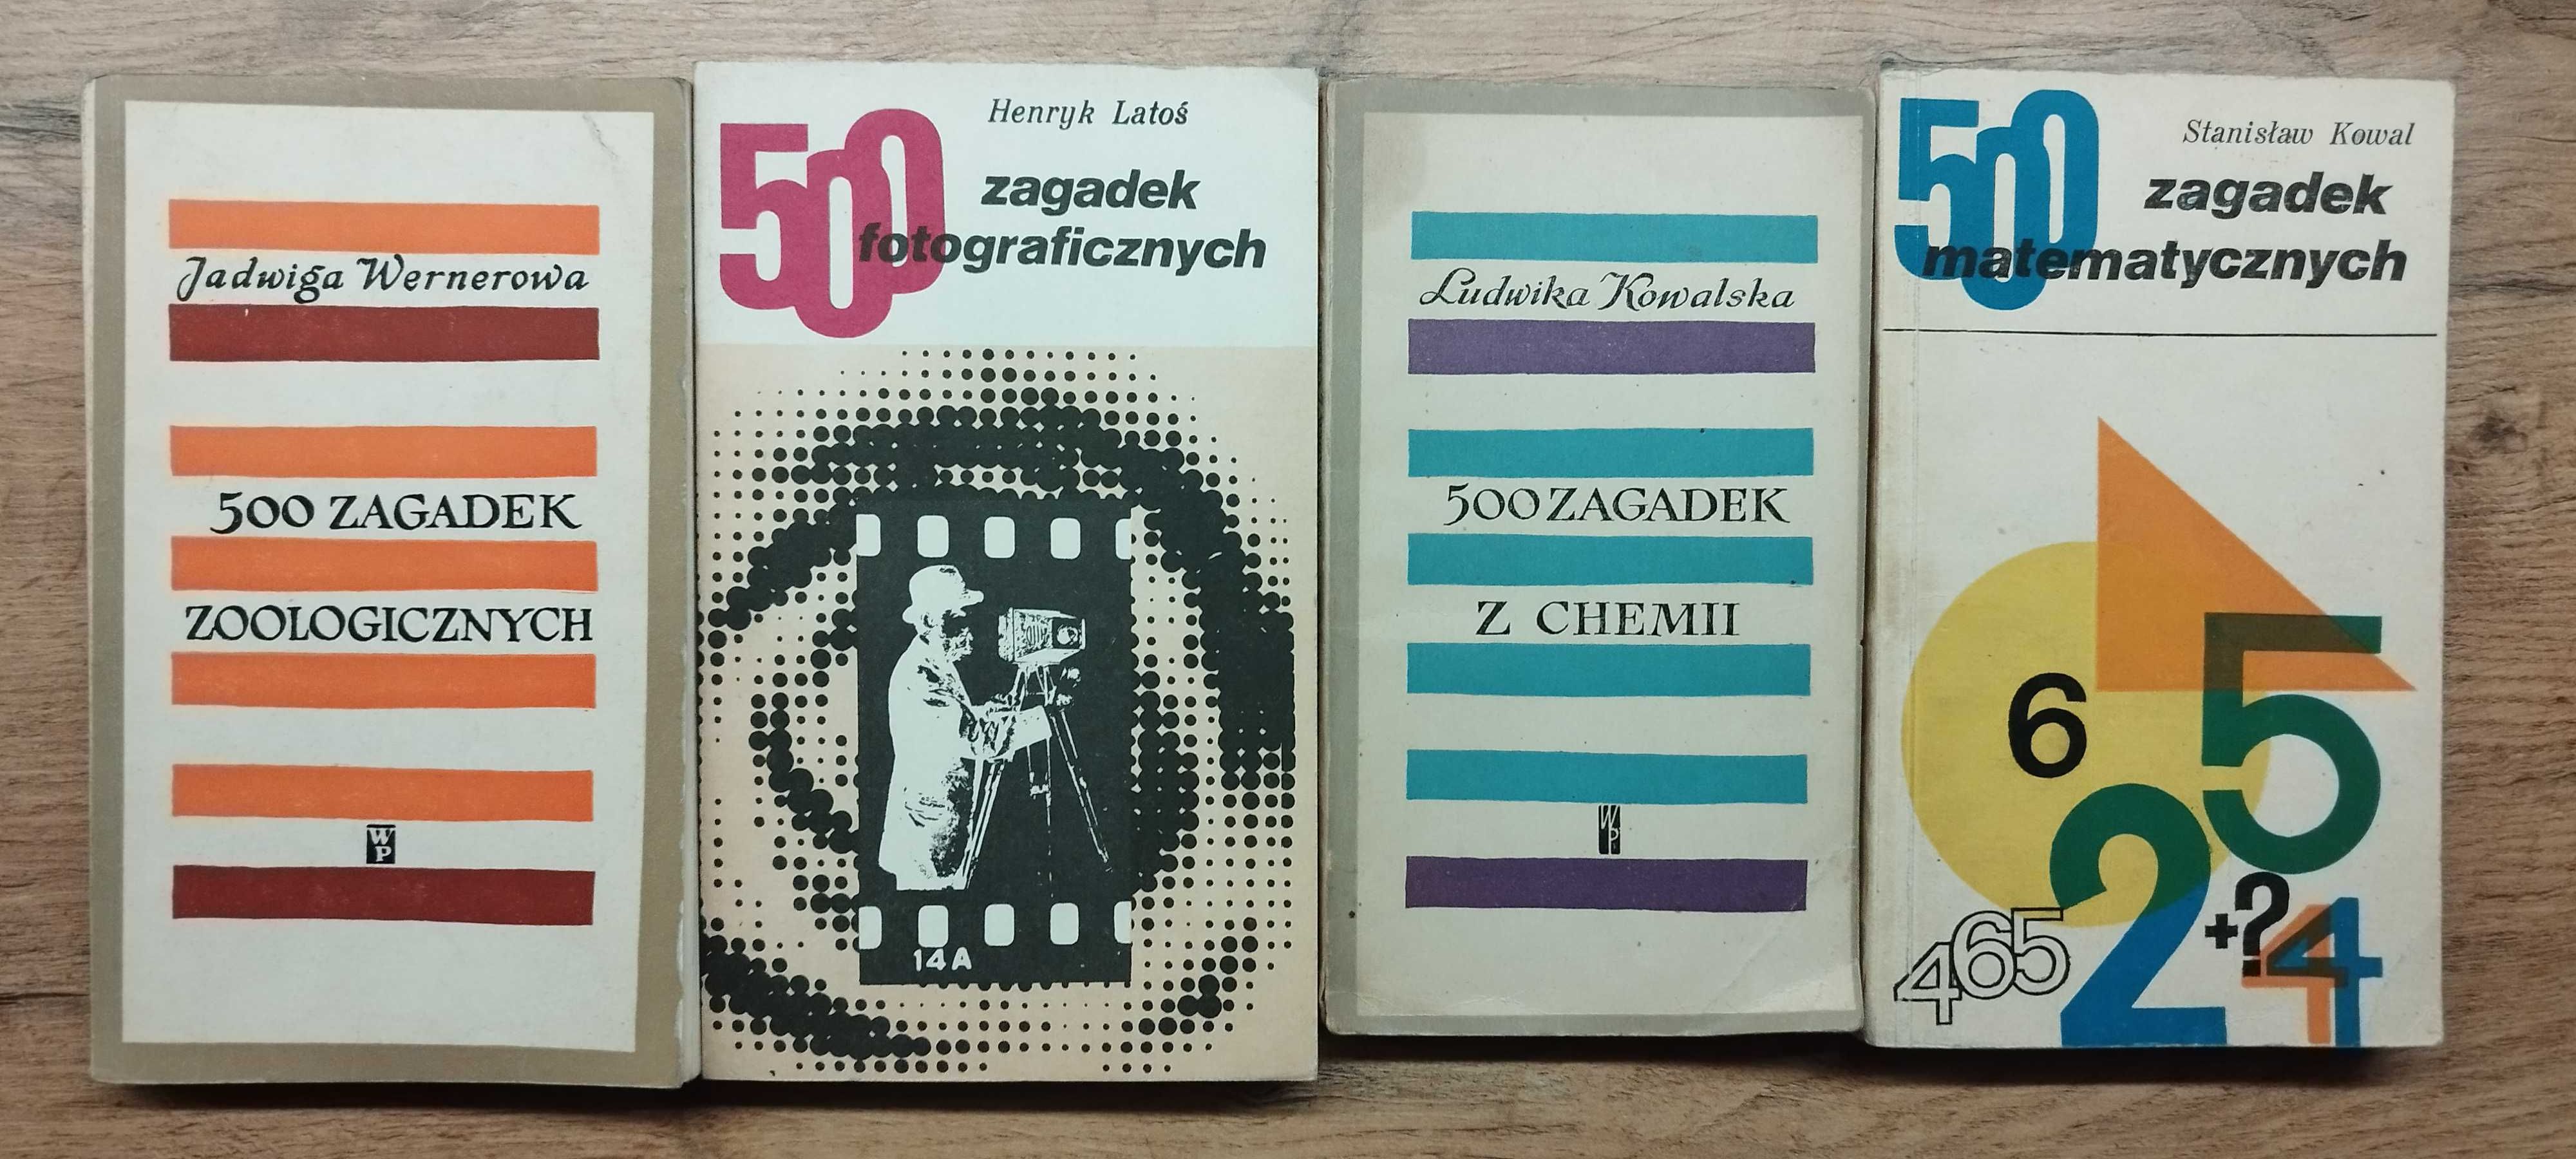 Książeczki z serii "500 ZAGADEK" komplet z 8 dziedzin